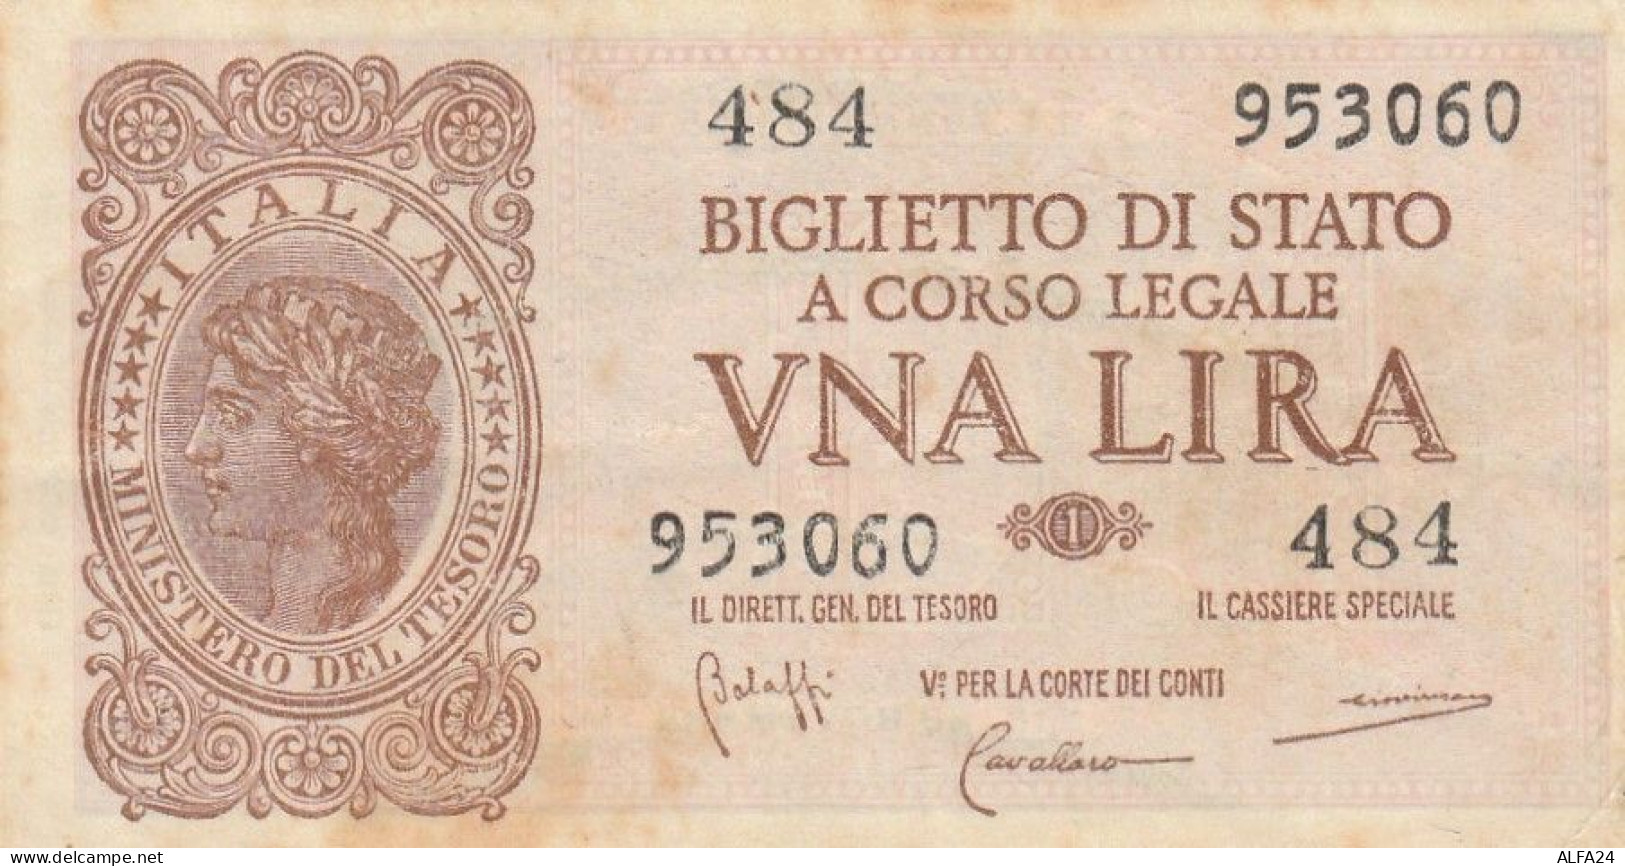 BANCONOTA UNA LIRA BIGLIETTO STATO EF (RY5715 - Regno D'Italia – 1 Lire